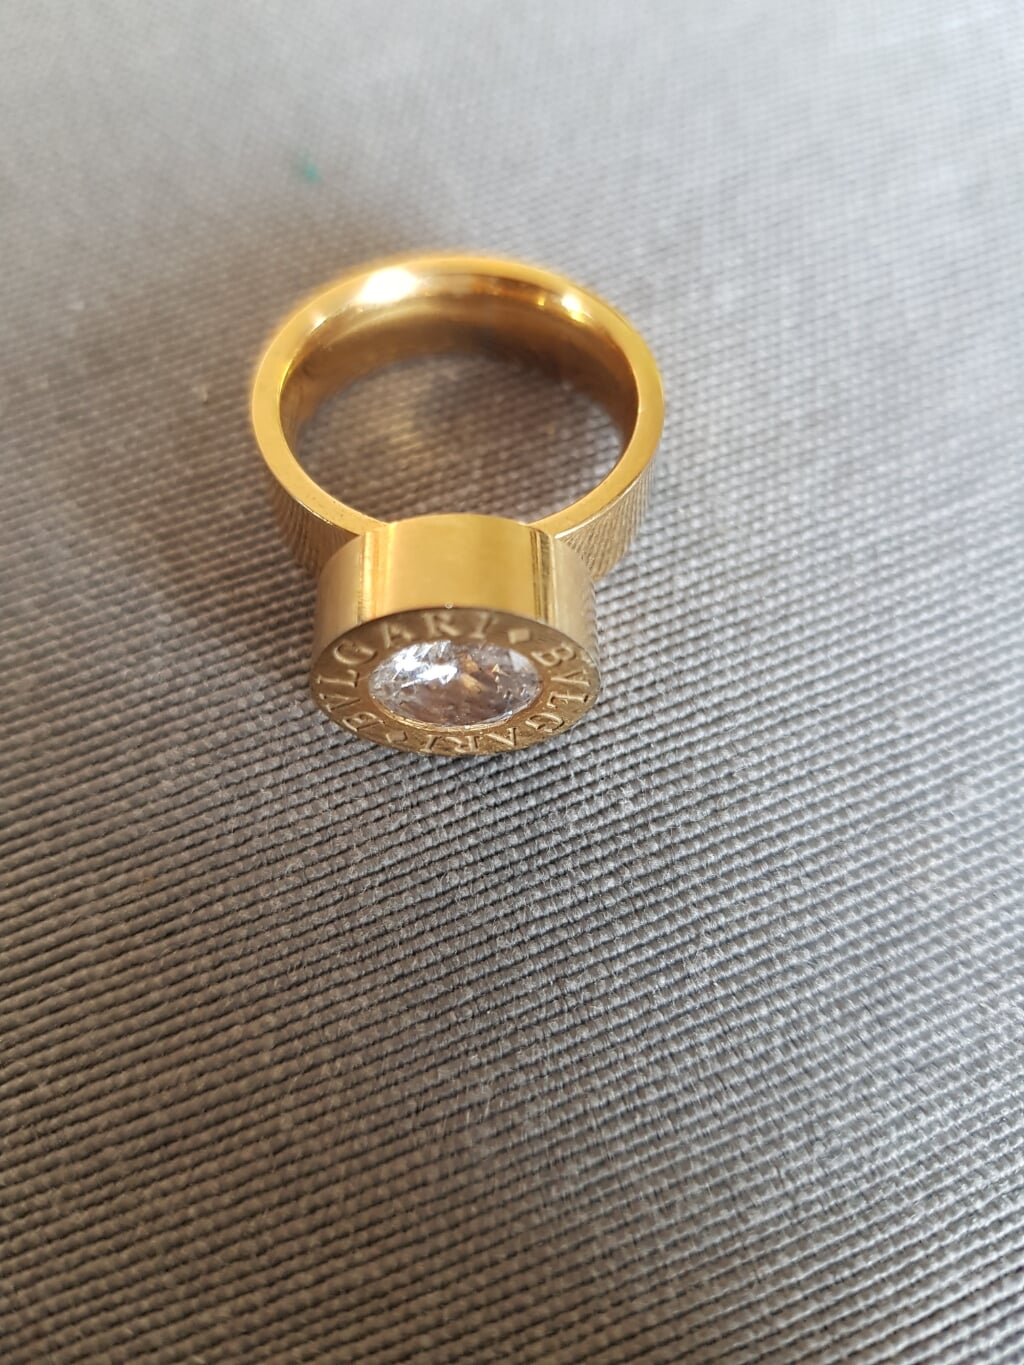 Bvulgari ring